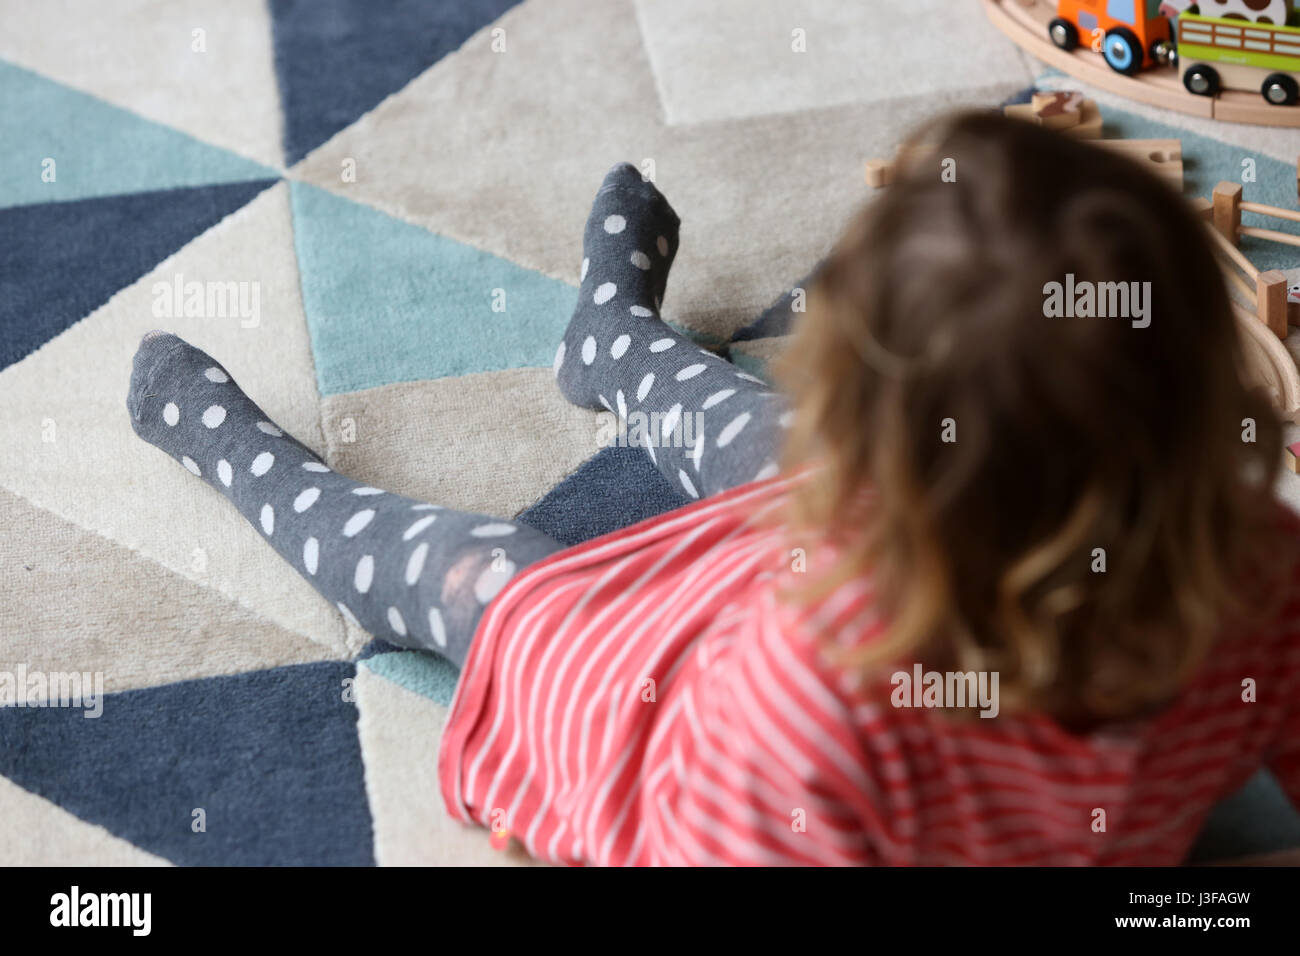 Une jeune fillette de deux ans sur la photo en jouant avec des jouets en bois dans son salon à son domicile à Sussex, UK. Banque D'Images